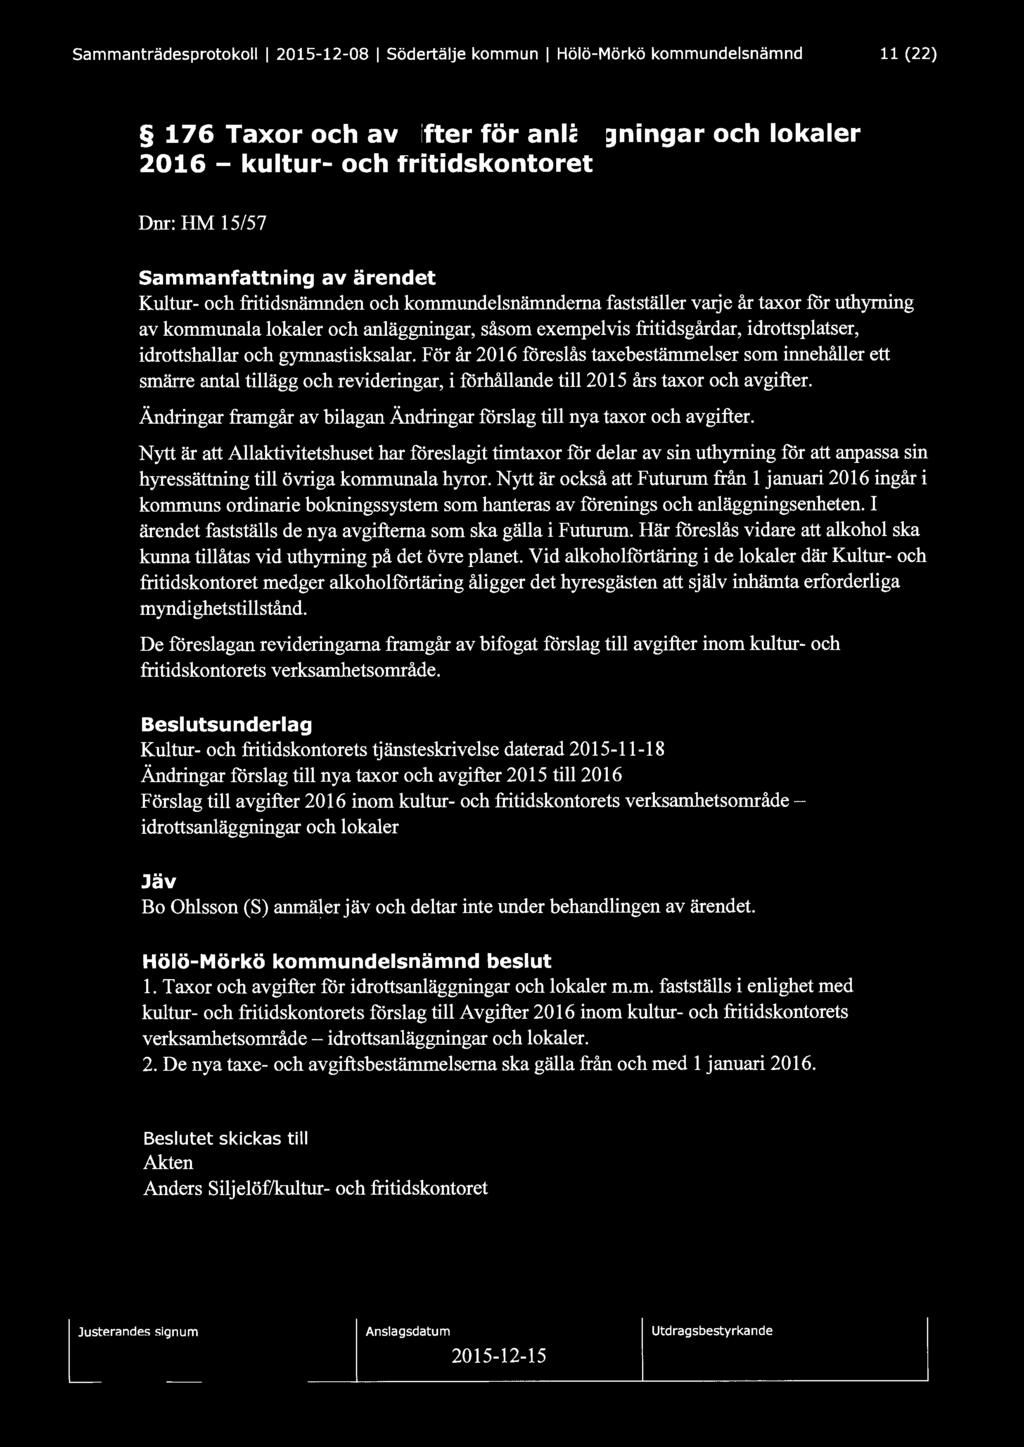 Sammanträdesprotokoll l 2015-12-08 l Södertälje kommun 1 Hölö-Mörkö kommundelsnämnd 11 (22) 176 Taxor och avgifter för anläggningar och lokaler 2016 - kultur- och fritidskontoret Dnr: HM 15/57